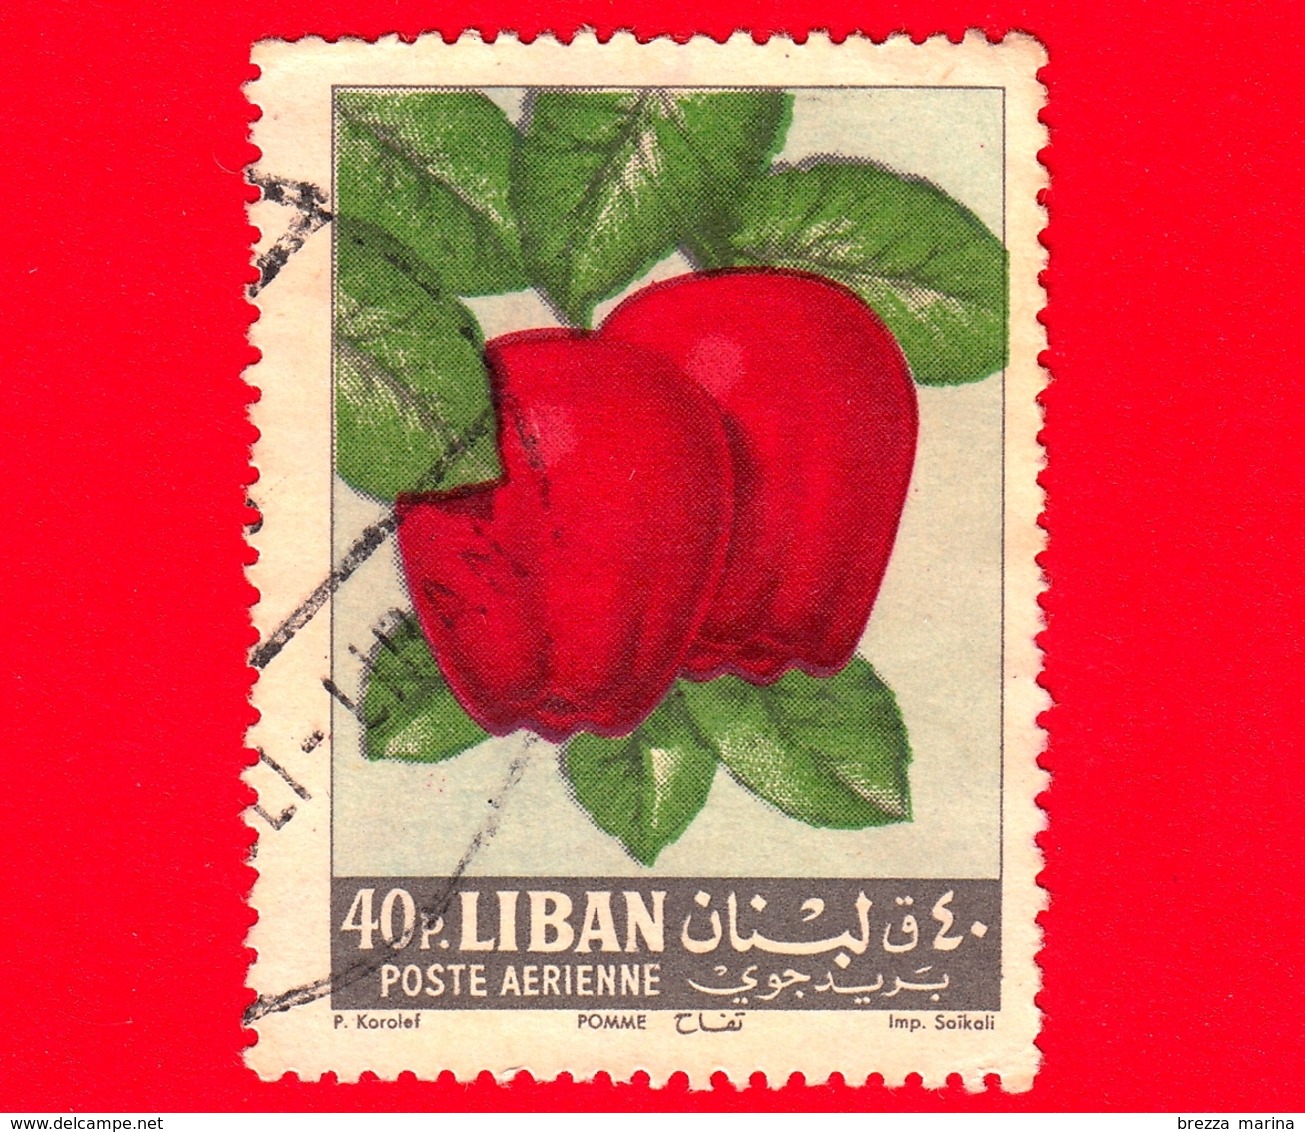 LIBANO - Usato - 1962 - Frutta - Mele - Apples - 40 - P. Aerea - Lebanon